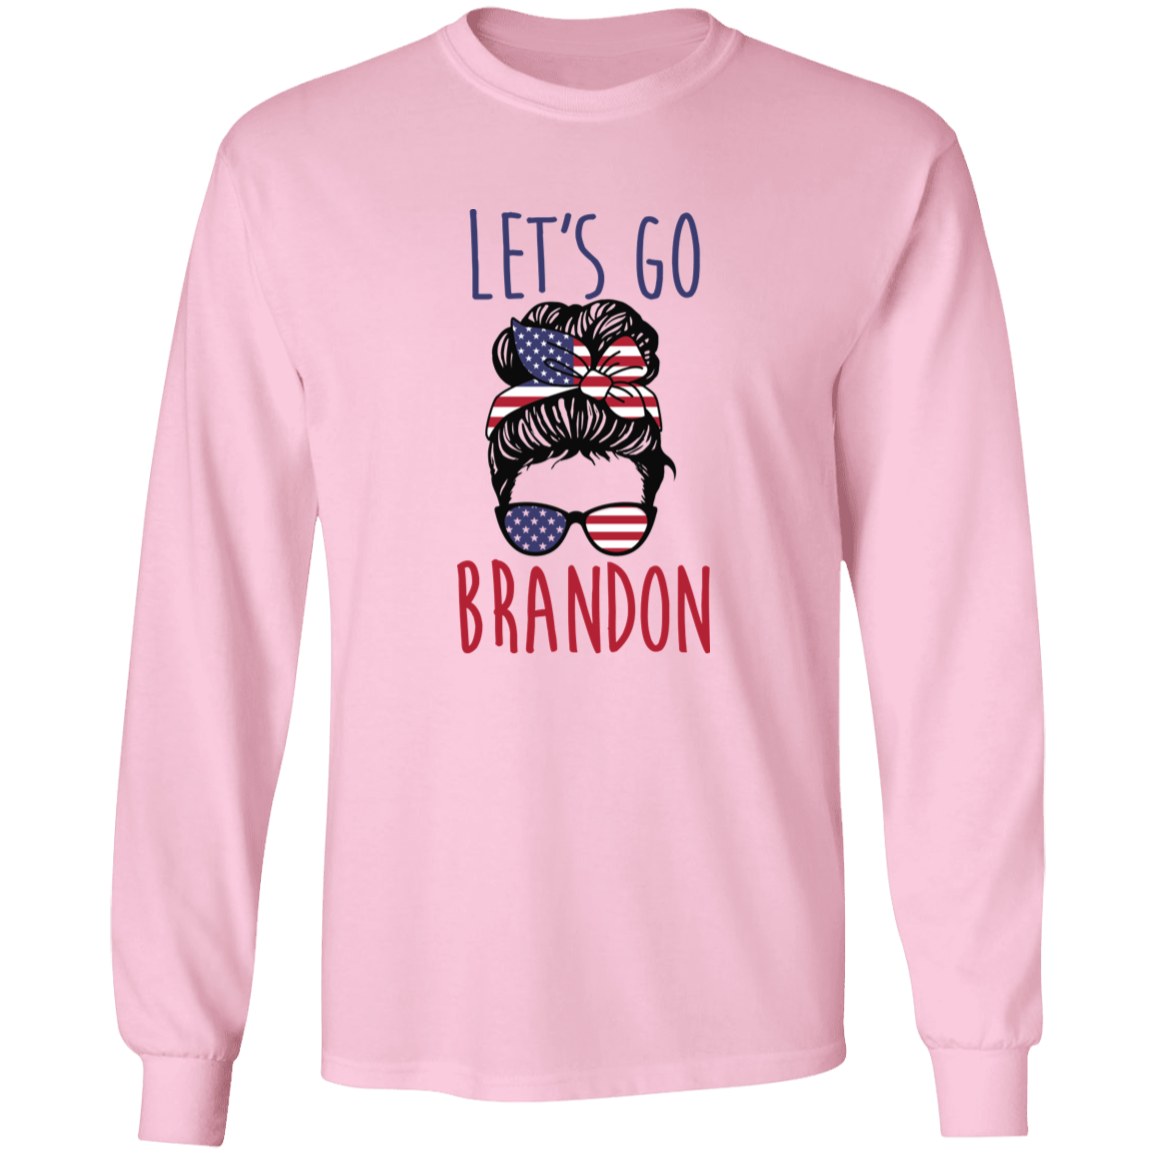 FJB - Let's Go Brandon - Girl